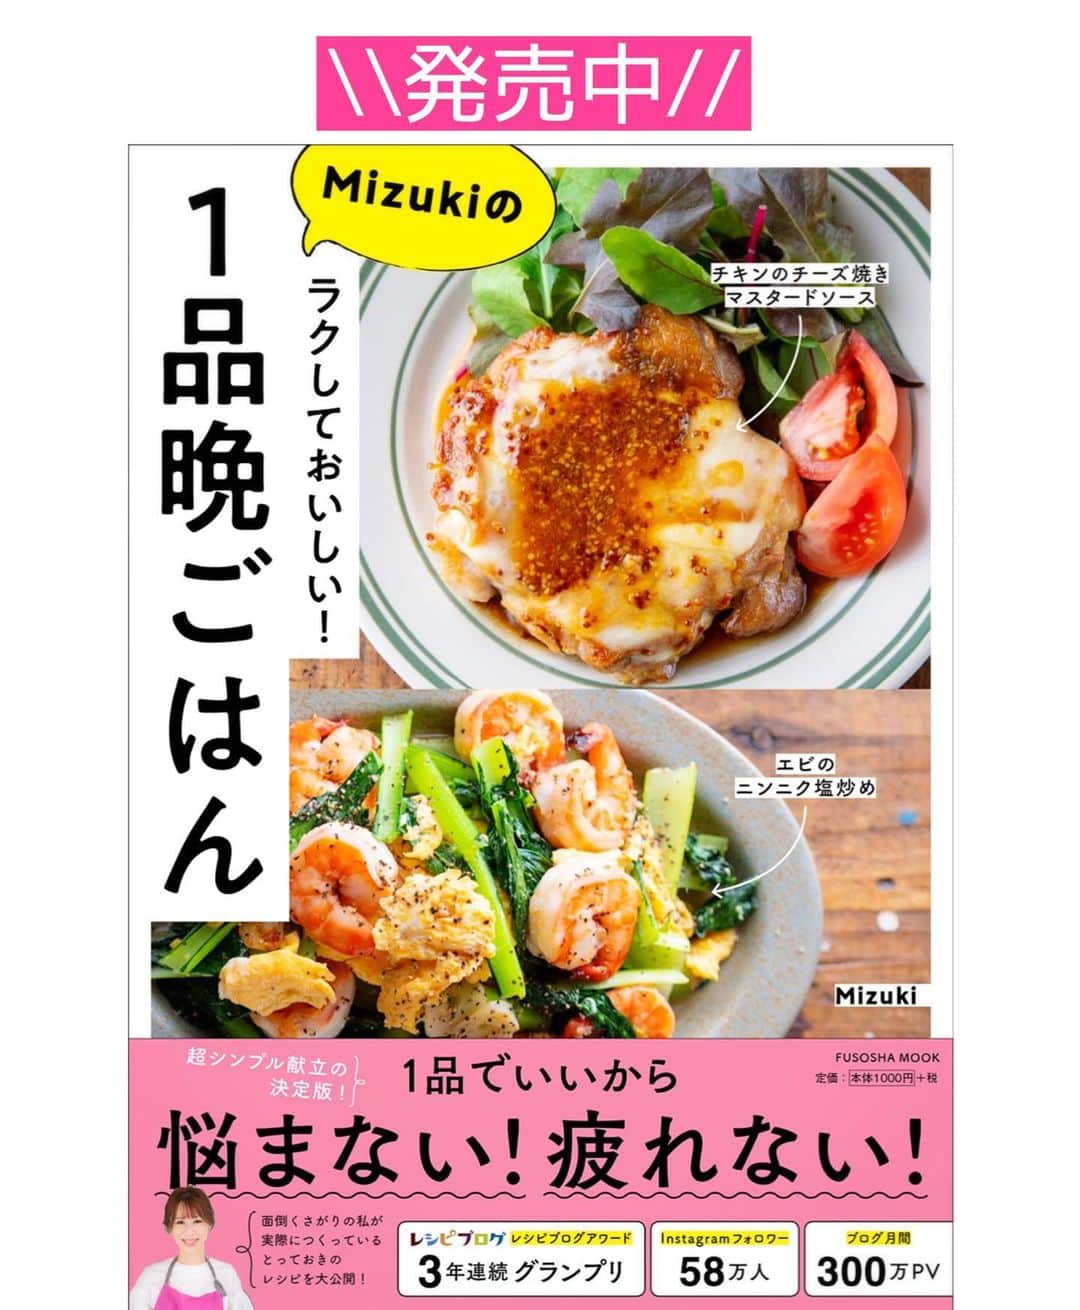 Mizuki【料理ブロガー・簡単レシピ】さんのインスタグラム写真 - (Mizuki【料理ブロガー・簡単レシピ】Instagram)「・﻿ 【#レシピ 】ーーーーーーーーー﻿ ♡豚ニラ卵のとろみあんかけ♡﻿ ーーーーーーーーーーーーーーー﻿ ﻿ ﻿ ﻿ おはようございます(*^^*)﻿ ﻿ 今日ご紹介させていただくのは﻿ \ 豚ニラ卵のとろみあんかけ /﻿ ﻿ しっかり味の中華あんで﻿ がっつりごはんがすすみますよ〜♩﻿ このままおかずにはもちろん﻿ 丼にするのもおすすめです♡﻿ ﻿ 作り方は超簡単(*´艸`)﻿ 味付けもとろみ付けも﻿ 合わせ調味料で失敗なし！﻿ コスパも抜群なので﻿ お気軽にお試し下さいね(*^^*)﻿ ﻿ ﻿ ﻿ ＿＿＿＿＿＿＿＿＿＿＿＿＿＿＿＿＿＿＿＿﻿ 【2人分】﻿ 豚バラ薄切り肉...180g﻿ ニラ...1/3束﻿ 卵...2個﻿ ごま油...大1﻿ ●水...150ml﻿ ●みりん・オイスターソース...各大1.5﻿ ●醤油・片栗粉...各小2﻿ ﻿ 1.豚肉とニラは4cm長さに切る。卵は溶きほぐす。●は合わせておく。﻿ 2.フライパンにごま油を強火で熱し、溶き卵を流し入れて大きく混ぜ、半熟になったら取り出しておく。﻿ 3.そのままのフライパンを中火で熱して豚肉を炒める。火が通ったらニラと●を加え、混ぜながらとろみをつけ、仕上げに2を戻し入れて混ぜる。﻿ ￣￣￣￣￣￣￣￣￣￣￣￣￣￣￣￣￣￣￣￣﻿ ﻿ ﻿ ﻿ ﻿ 《ポイント》﻿ ♦︎しっかりめの味付けです♩﻿ ♦︎豚こまで作っても◎﻿ ♦︎合わせ調味料はよく混ぜてから加えて下さい♩﻿ ﻿ ﻿ ﻿ ﻿ ﻿ ﻿ ﻿ 📕新刊発売中📕﻿ 【ラクしておいしい！#1品晩ごはん 】﻿ ￣￣￣￣￣￣￣￣￣￣￣￣￣￣￣￣￣﻿ 私たちだってヘトヘトな日がある•••﻿ 毎日何品も作っていられない•••﻿ もうごはんに悩みたくない😢﻿ そんな時、1品ごはんはいかがでしょう？﻿ というご提案です✨﻿ ﻿ 【1品ごはん】は﻿ 副菜いらずで全てがシンプル！﻿ ￣￣￣￣￣￣￣￣￣￣￣￣￣￣￣￣￣￣﻿ 一品つくるだけでいいから﻿ 献立を考えなくてよし！﻿ ￣￣￣￣￣￣￣￣￣￣￣￣￣￣￣￣￣￣﻿ 悩まない、疲れない、﻿ 気力や時間がなくてもなんとかなる！﻿ ￣￣￣￣￣￣￣￣￣￣￣￣￣￣￣￣￣￣﻿ そんな頼りになる﻿ 便利なお助けごはんです☺️💕﻿ (ハイライトに🔗貼っています✨)﻿ ￣￣￣￣￣￣￣￣￣￣￣￣￣￣￣￣￣﻿ ﻿ ﻿ ﻿ ﻿ ﻿ ⭐️発売中⭐️﻿ ＿＿＿＿＿＿＿＿＿＿＿＿＿＿＿＿＿＿﻿ しんどくない献立、考えました♩﻿ \15分でいただきます/﻿ 📕#Mizukiの2品献立 📕﻿ ﻿ 和食をもっとカジュアルに♩﻿ \毎日のごはんがラクになる/﻿ 📘#Mizukiの今どき和食 📘﻿ ﻿ ホケミレシピの決定版♩﻿ \はじめてでも失敗しない/﻿ 📙#ホットケーキミックスのお菓子 📙﻿ ﻿ NHKまる得マガジンテキスト☆﻿ ホットケーキミックスで﻿ 📗絶品おやつ&意外なランチ📗﻿ ￣￣￣￣￣￣￣￣￣￣￣￣￣￣￣￣￣￣﻿ ﻿ ﻿ ﻿ ＿＿＿＿＿＿＿＿＿＿＿＿＿＿＿＿＿＿﻿ レシピを作って下さった際や﻿ レシピ本についてのご投稿には﻿ タグ付け( @mizuki_31cafe )して﻿ お知らせいただけると嬉しいです😊💕﻿ ￣￣￣￣￣￣￣￣￣￣￣￣￣￣￣￣￣￣﻿ ﻿ ﻿ ﻿ ﻿ #豚肉#ニラ#卵#あんかけ#Mizuki#簡単レシピ#時短レシピ#節約レシピ#料理#フーディーテーブル#マカロニメイト#おうちごはん#デリスタグラマー#料理好きな人と繋がりたい#おうちごはんlover#写真好きな人と繋がりたい#foodpic#cooking#recipe#lin_stagrammer#foodporn#yummy#f52grams#豚ニラ卵のとろみあんかけm」1月12日 6時56分 - mizuki_31cafe